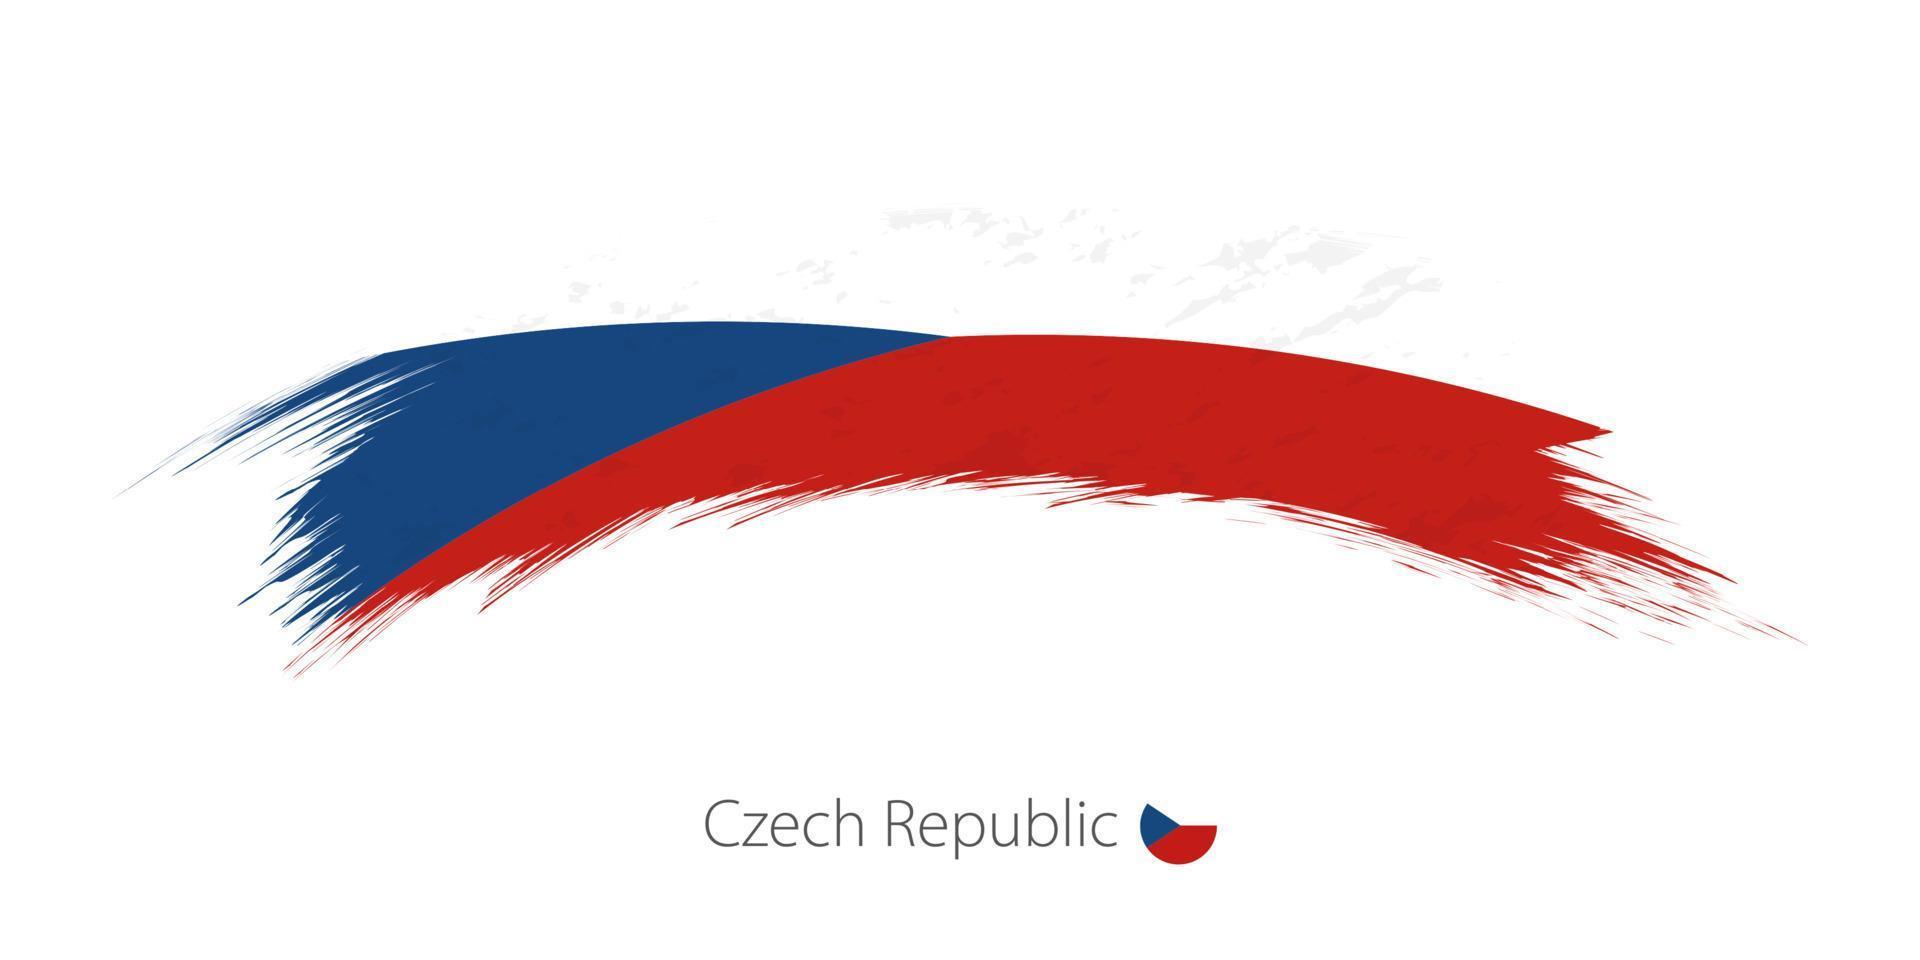 drapeau de la république tchèque en coup de pinceau grunge arrondi. vecteur